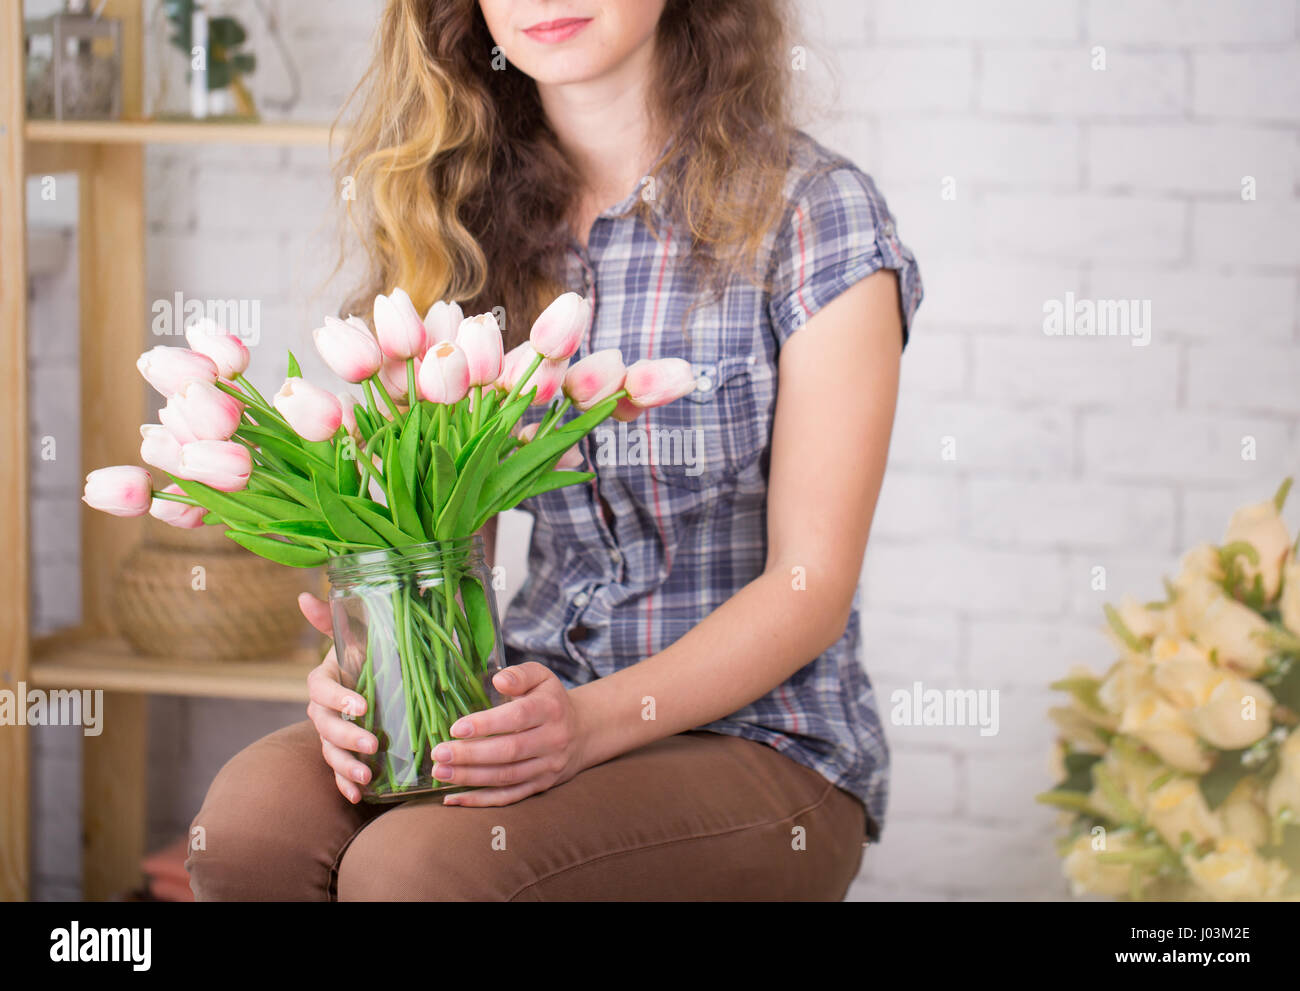 Una ragazza con bretelle in posa contro un muro di mattoni lo sfondo con un bouquet di tulipani. Concetto dentale Foto Stock